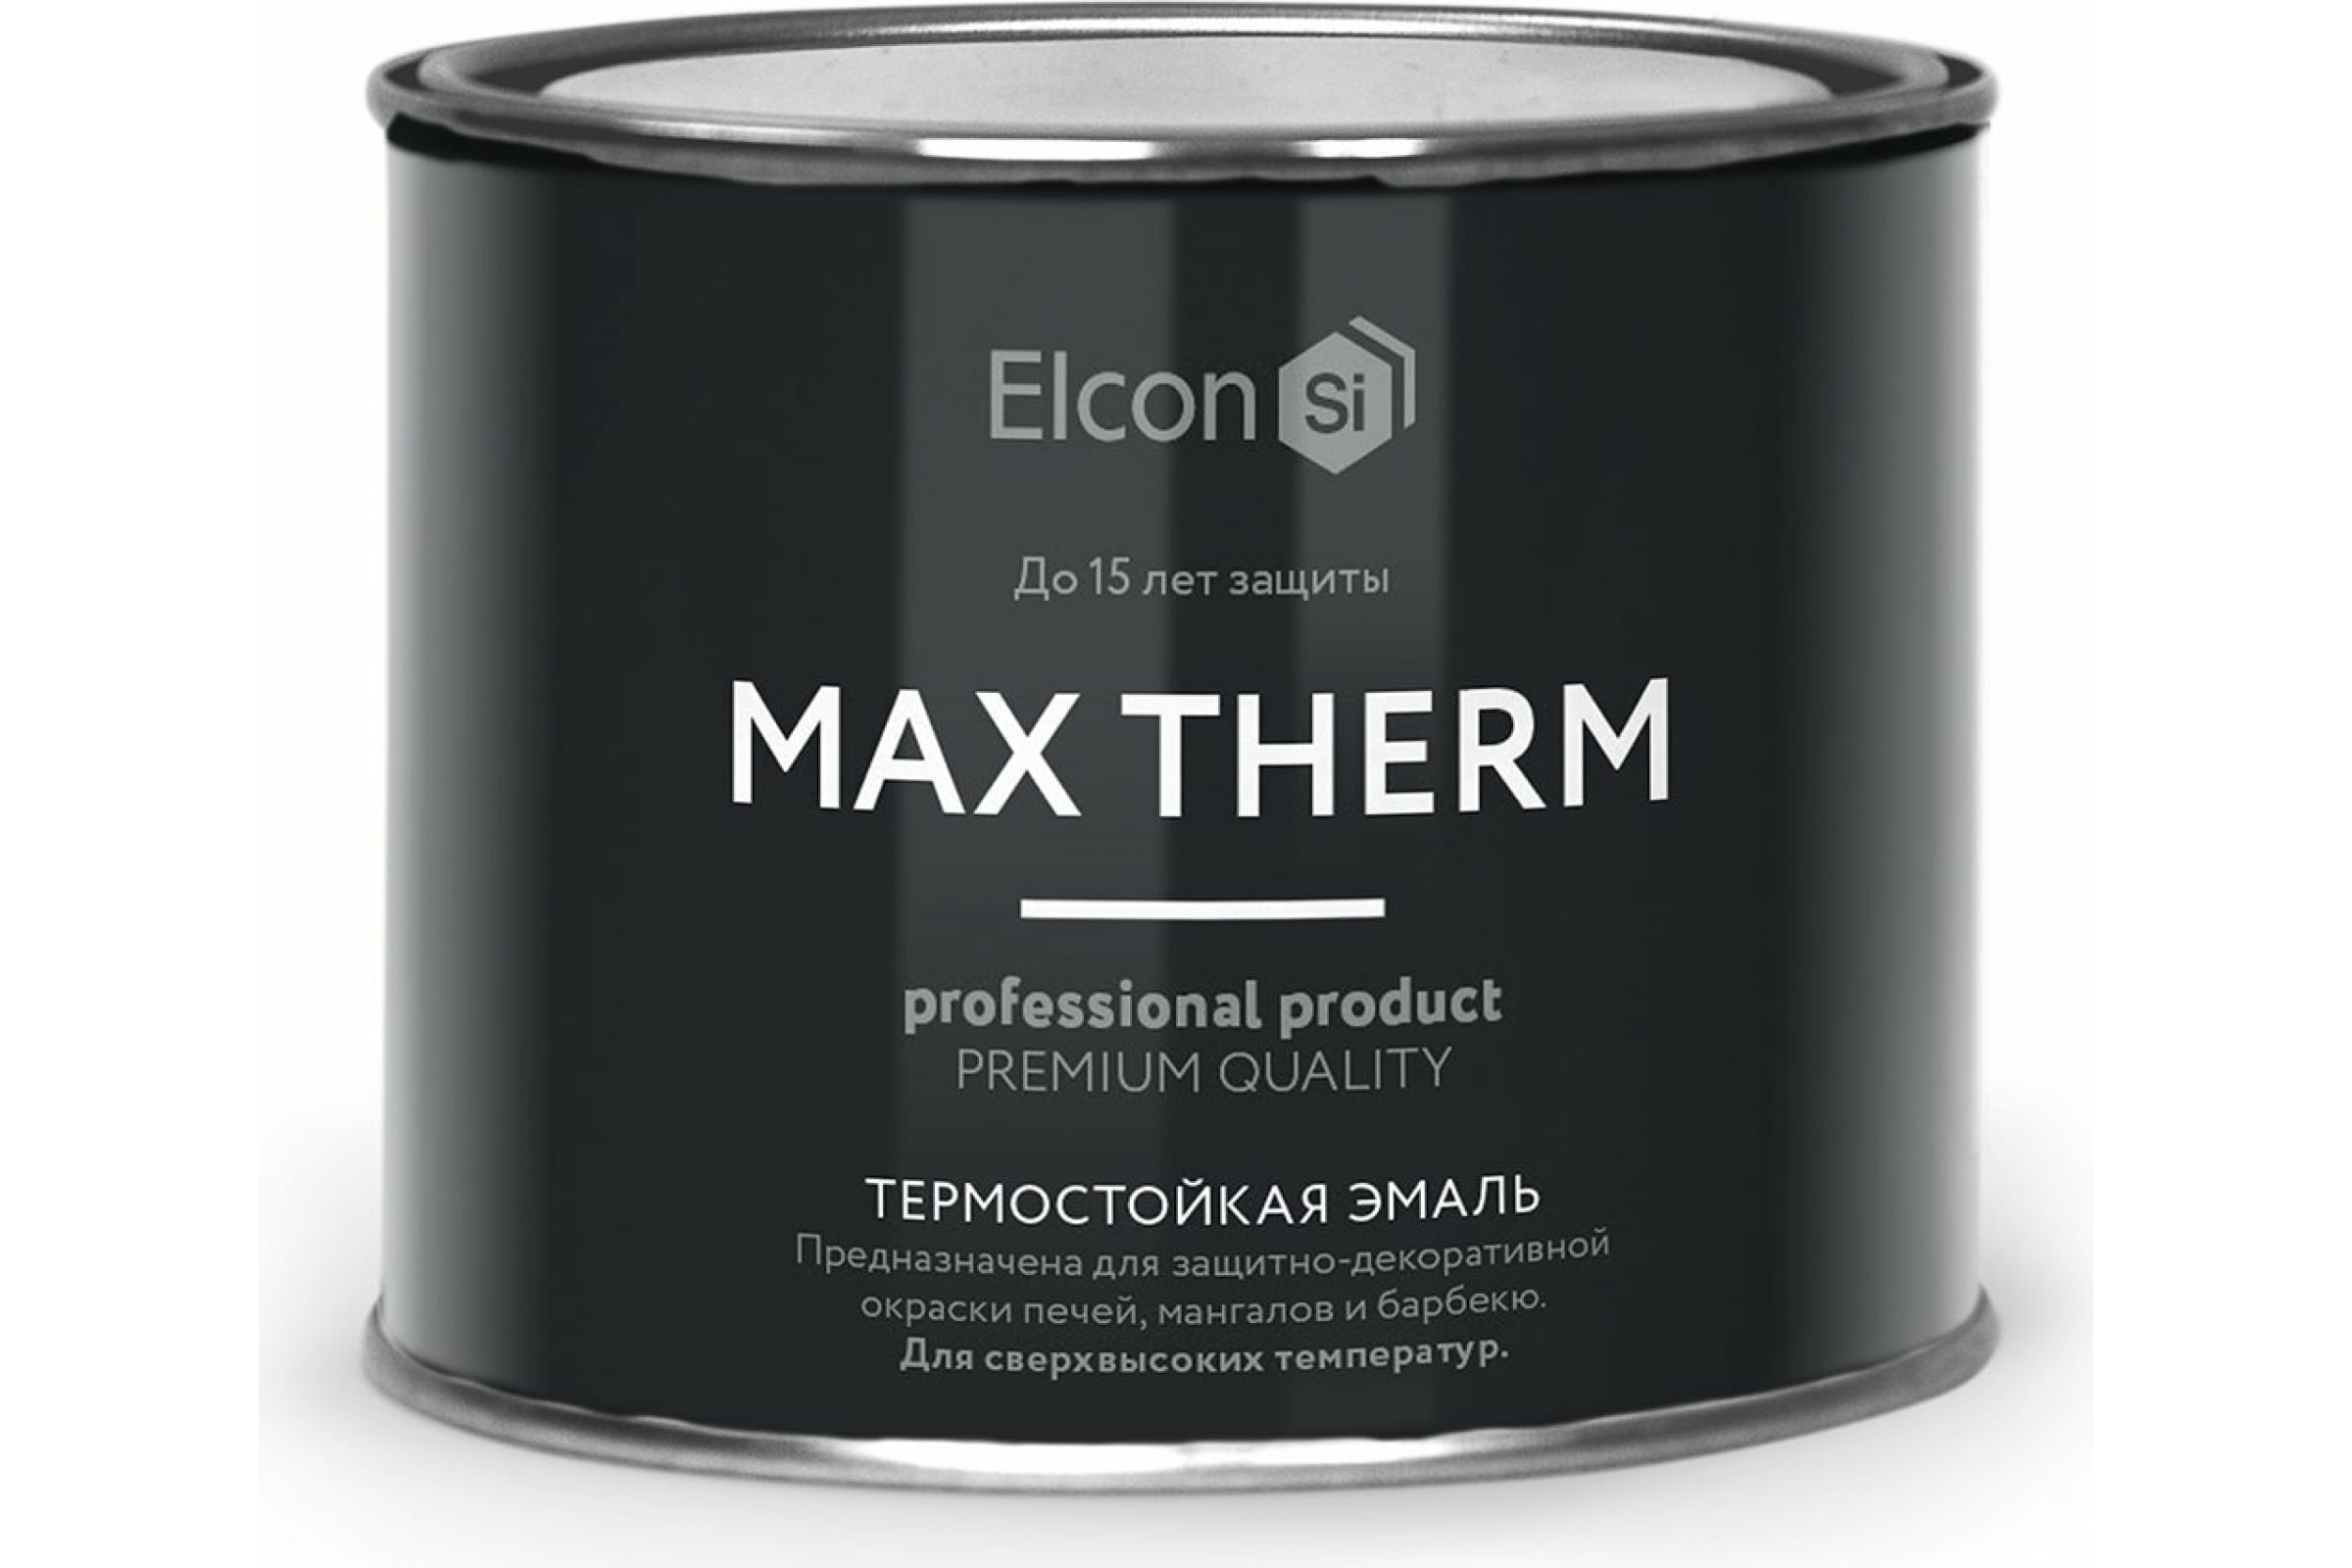 Термостойкая антикоррозионная эмаль Elcon Max Therm до 400 градусов, 0,4 л, бежевая